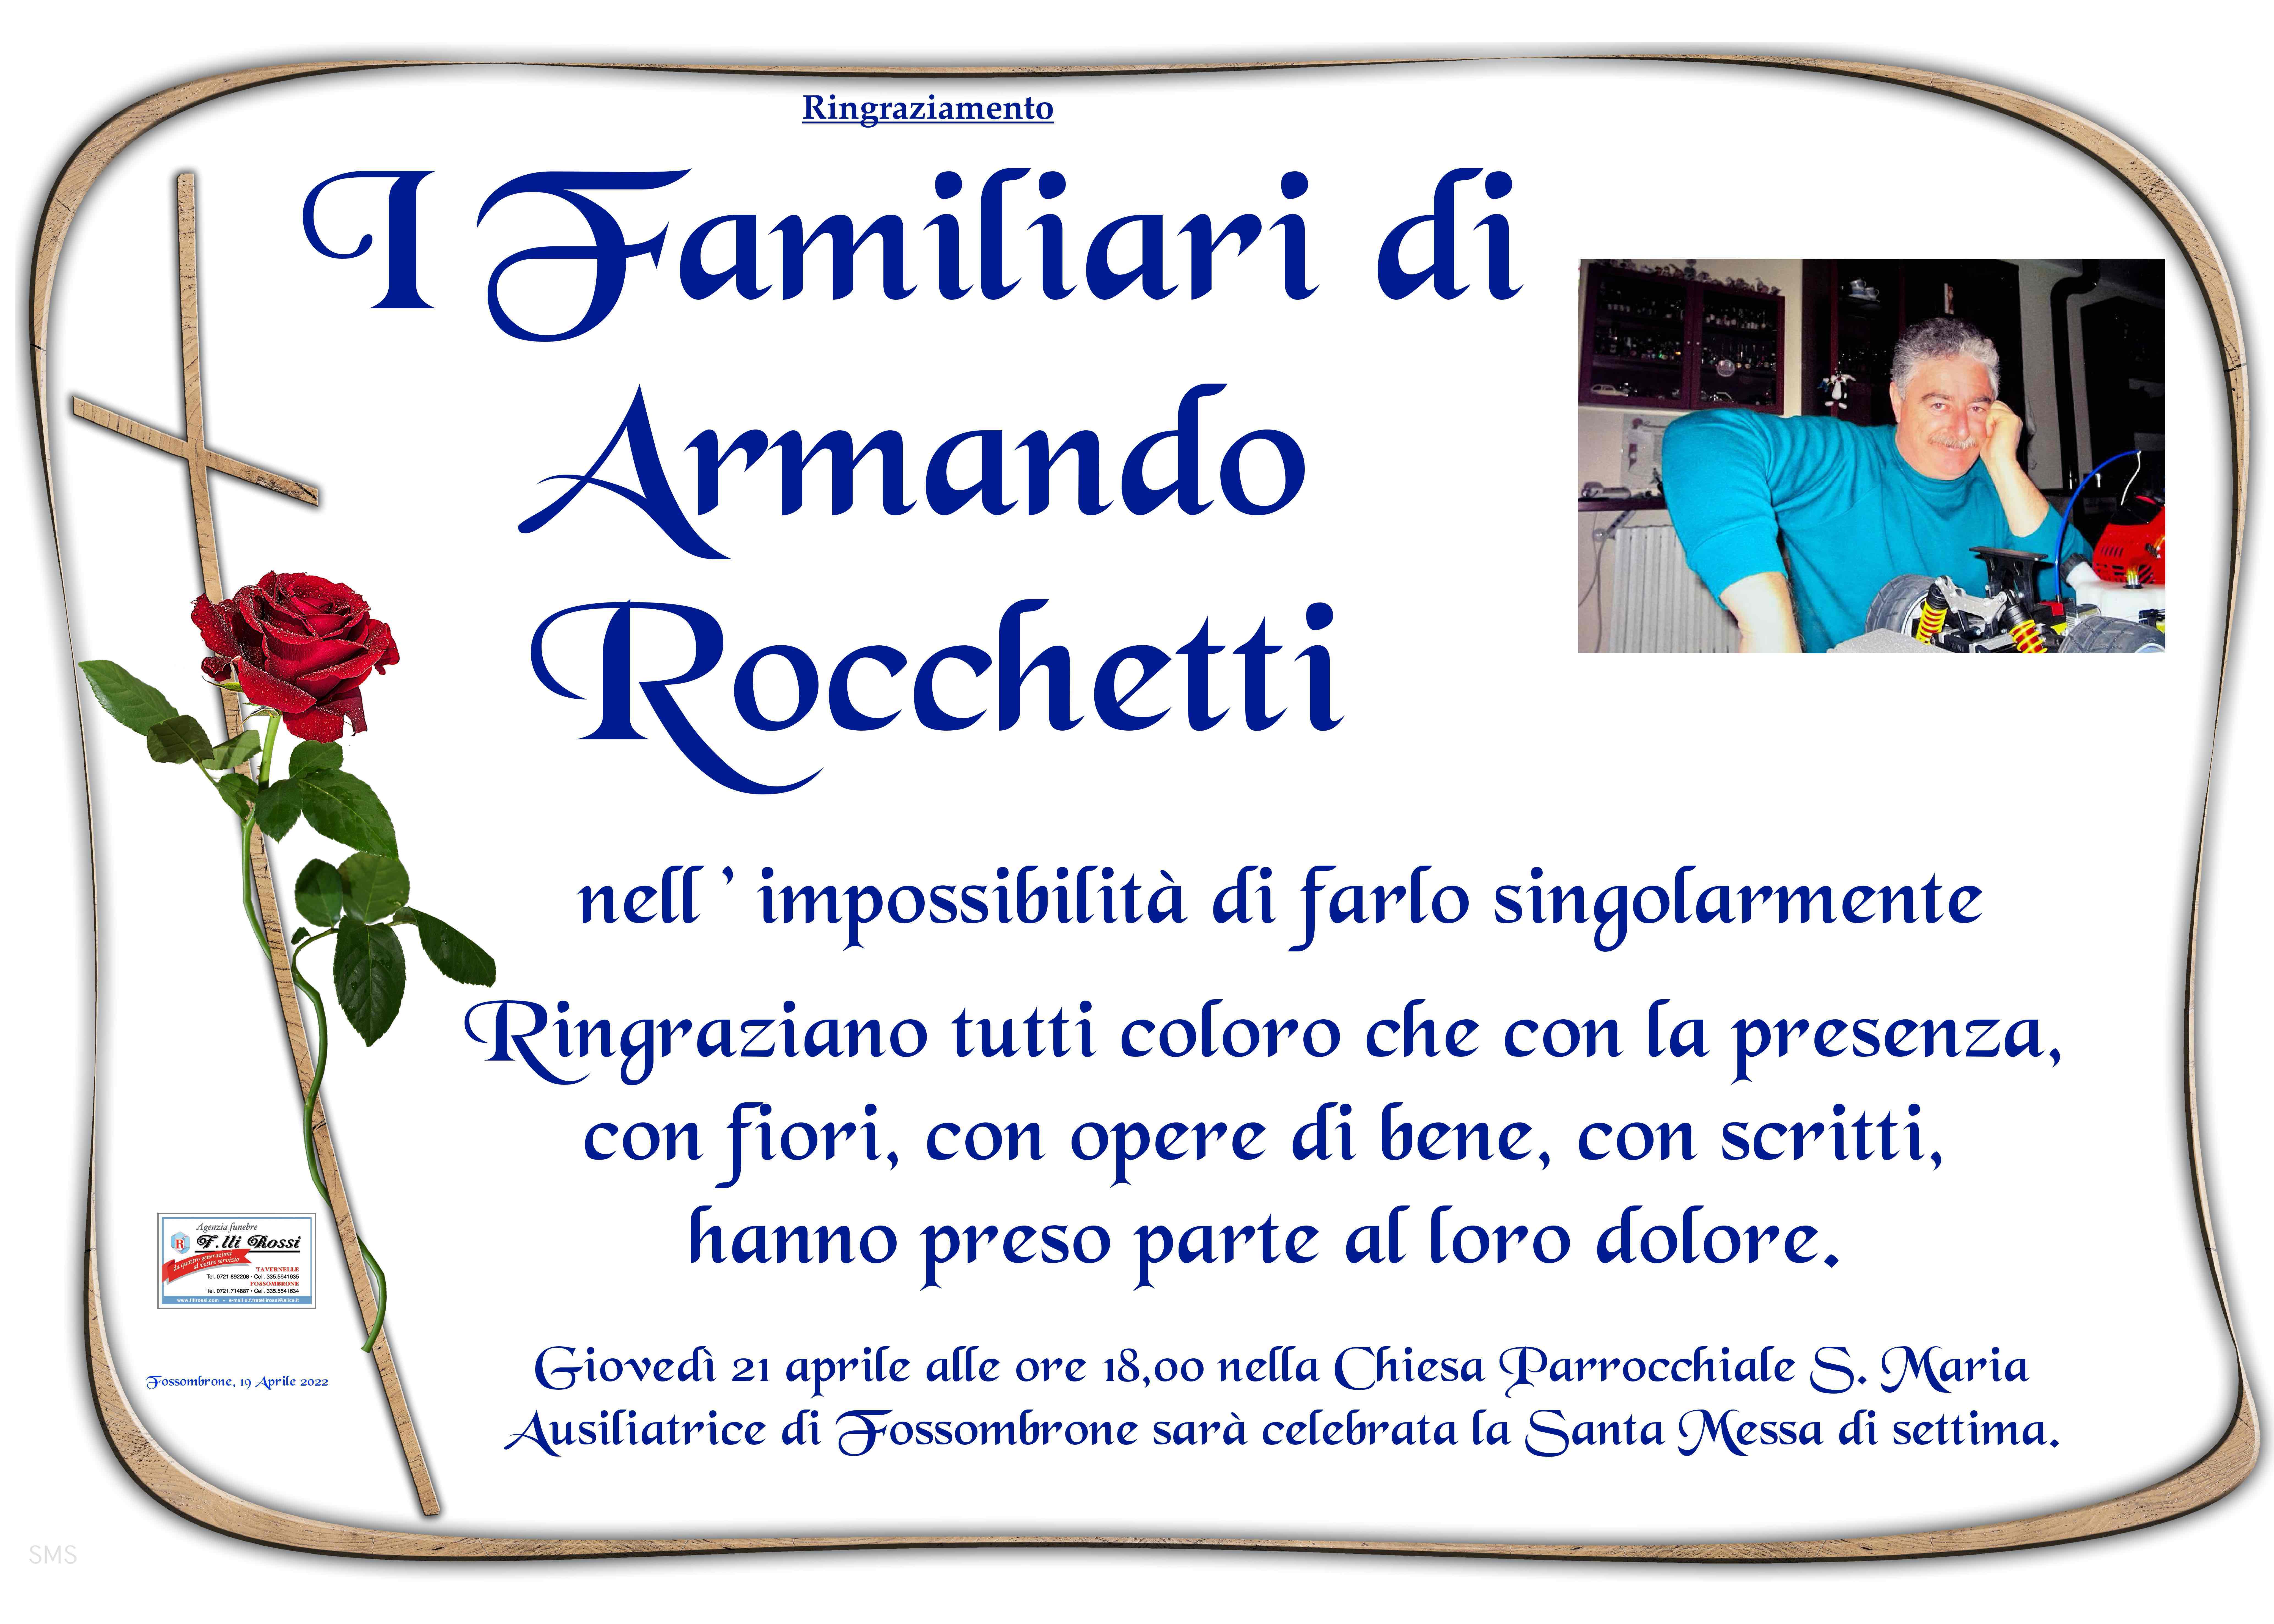 Armando Rocchetti